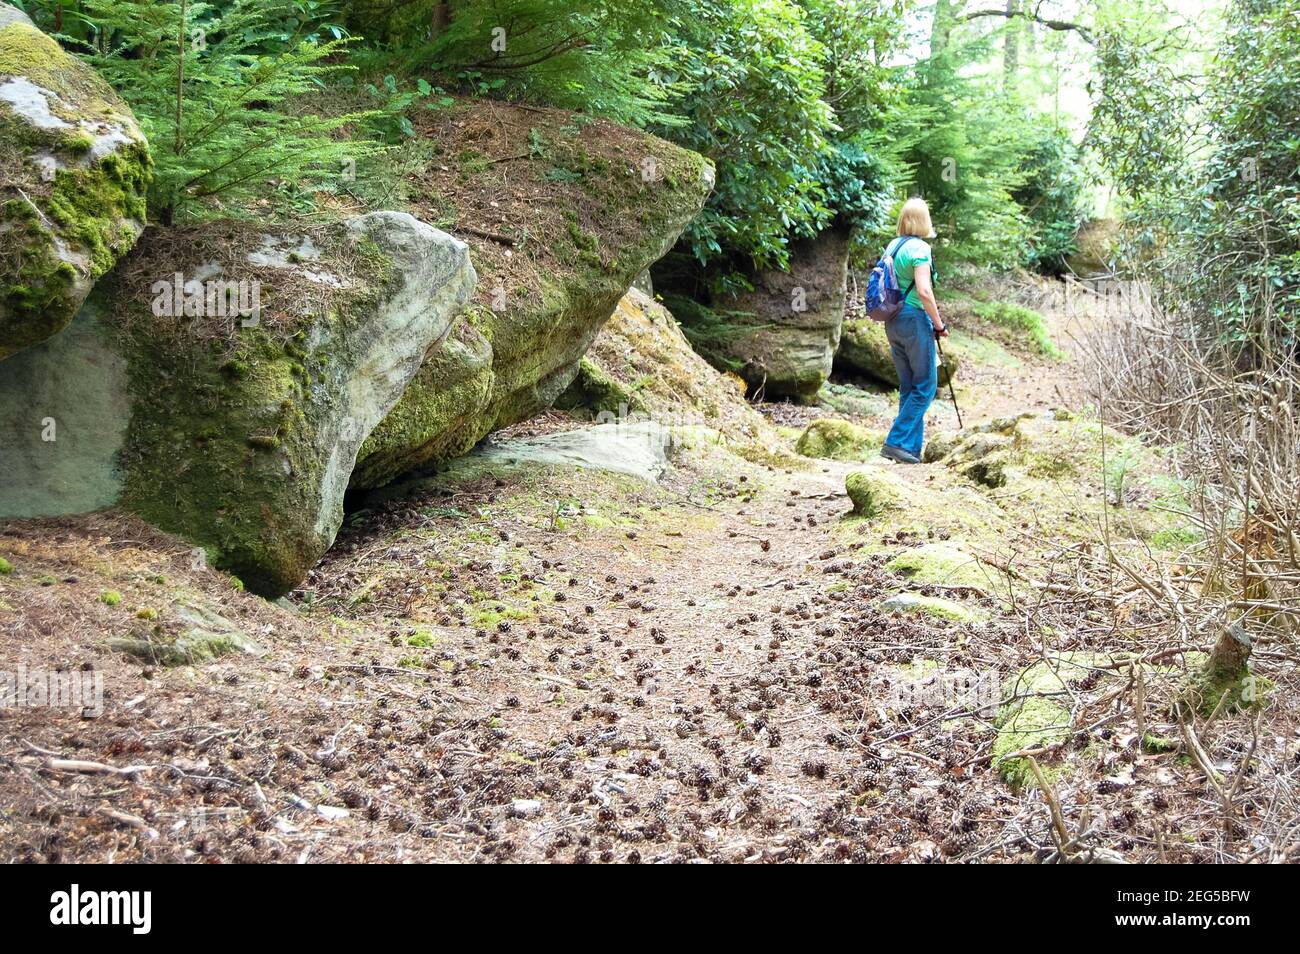 Cragside Northumberland UK femmina con lunghi capelli biondi camminare con bastone nella foresta con grandi rocce e boulder zaino blu jeans zona rocciosa Foto Stock